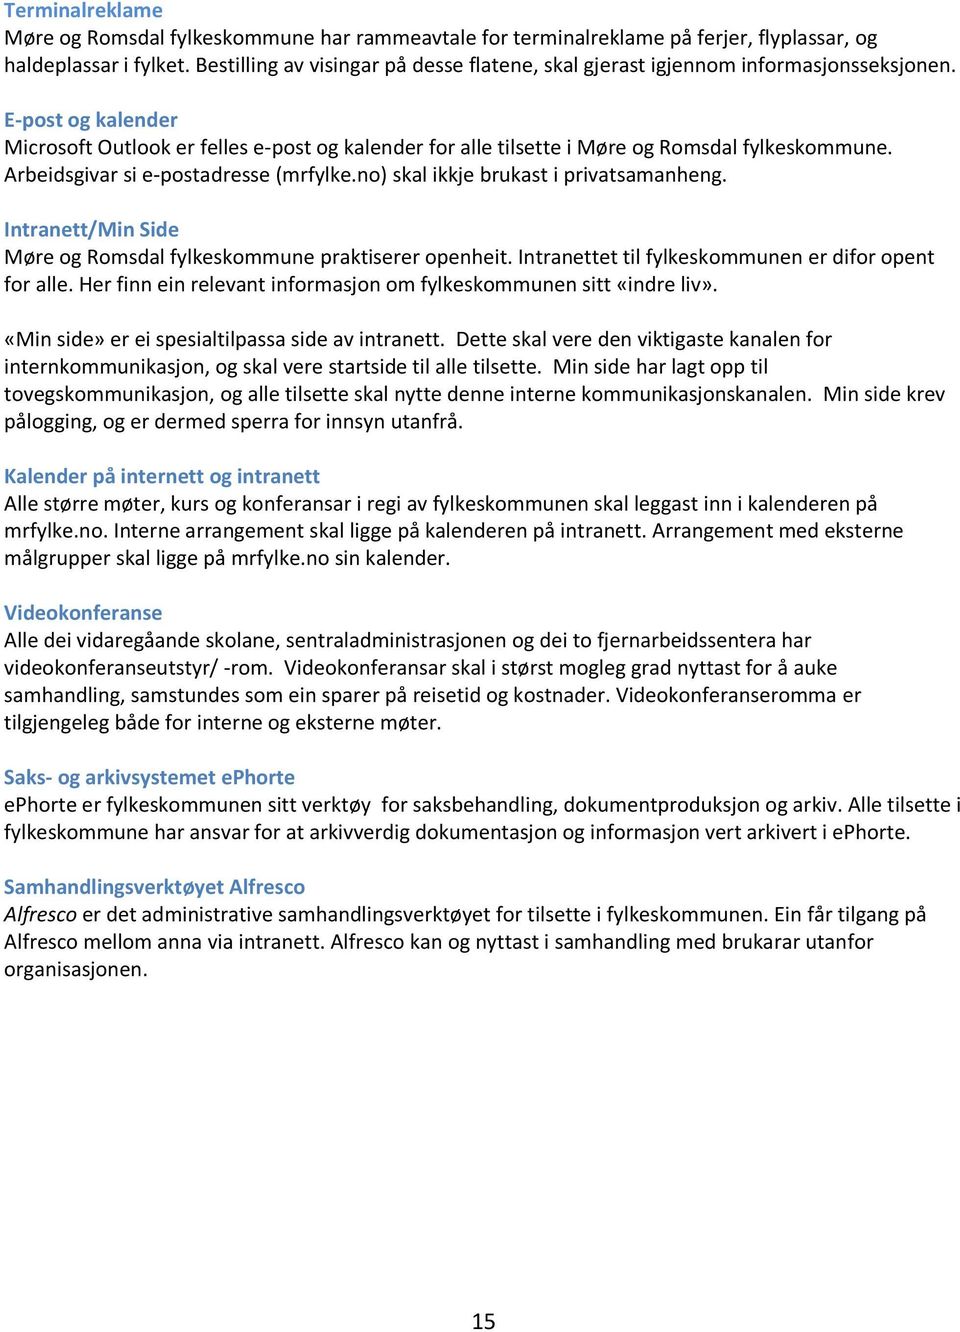 E-post og kalender Microsoft Outlook er felles e-post og kalender for alle tilsette i Møre og Romsdal fylkeskommune. Arbeidsgivar si e-postadresse (mrfylke.no) skal ikkje brukast i privatsamanheng.